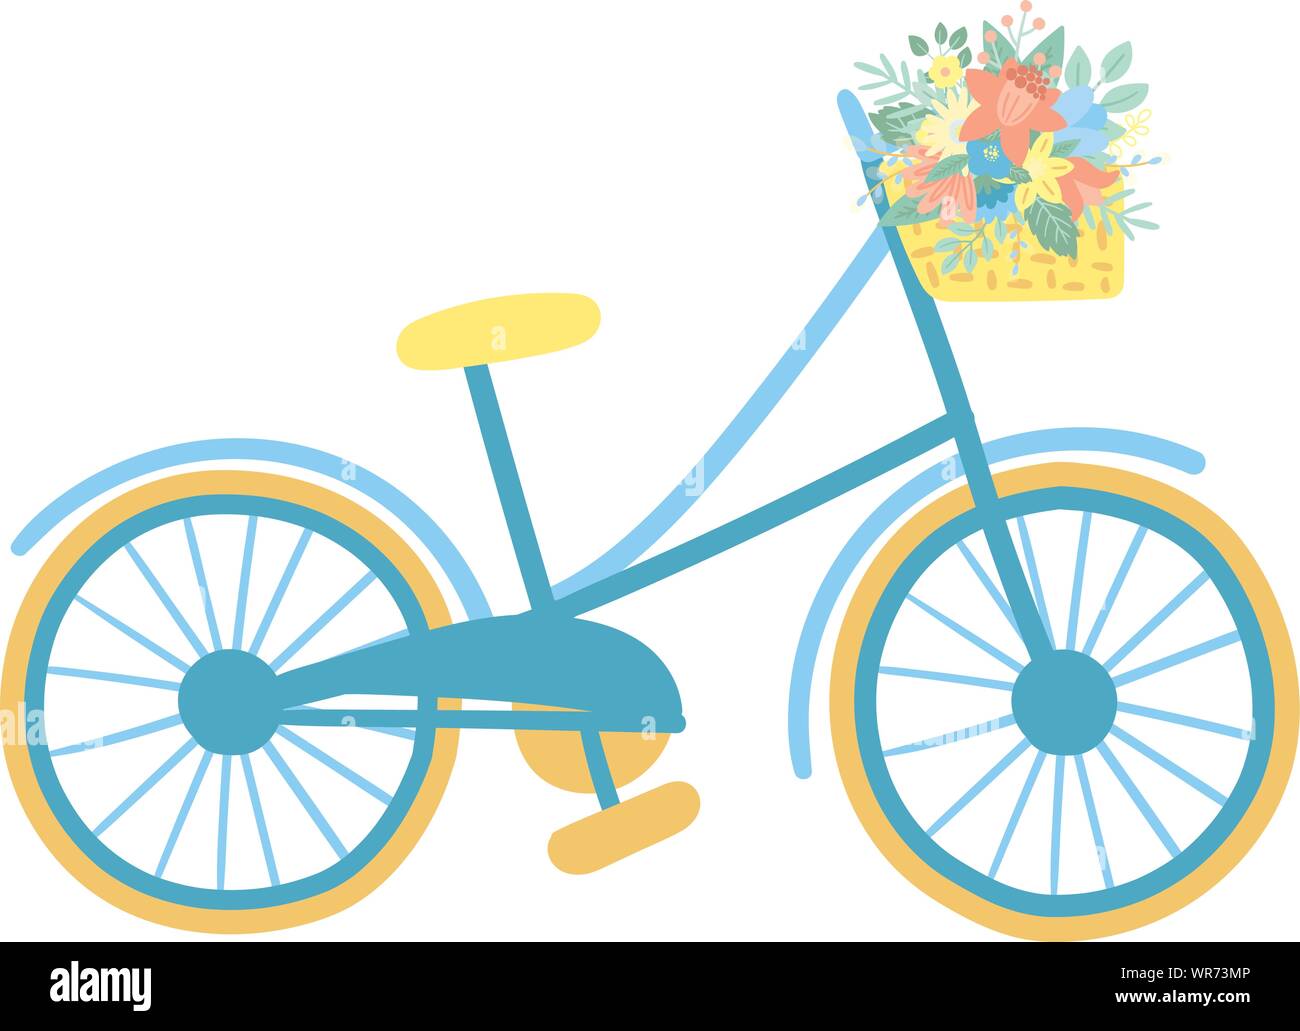 Image vectorielle d'un vélo avec panier et fleurs sur fond blanc.  Illustration de Pâques dessiné à la main d'un vélo pour les vacances de  printemps, l'été, l'imprimer, g Image Vectorielle Stock -